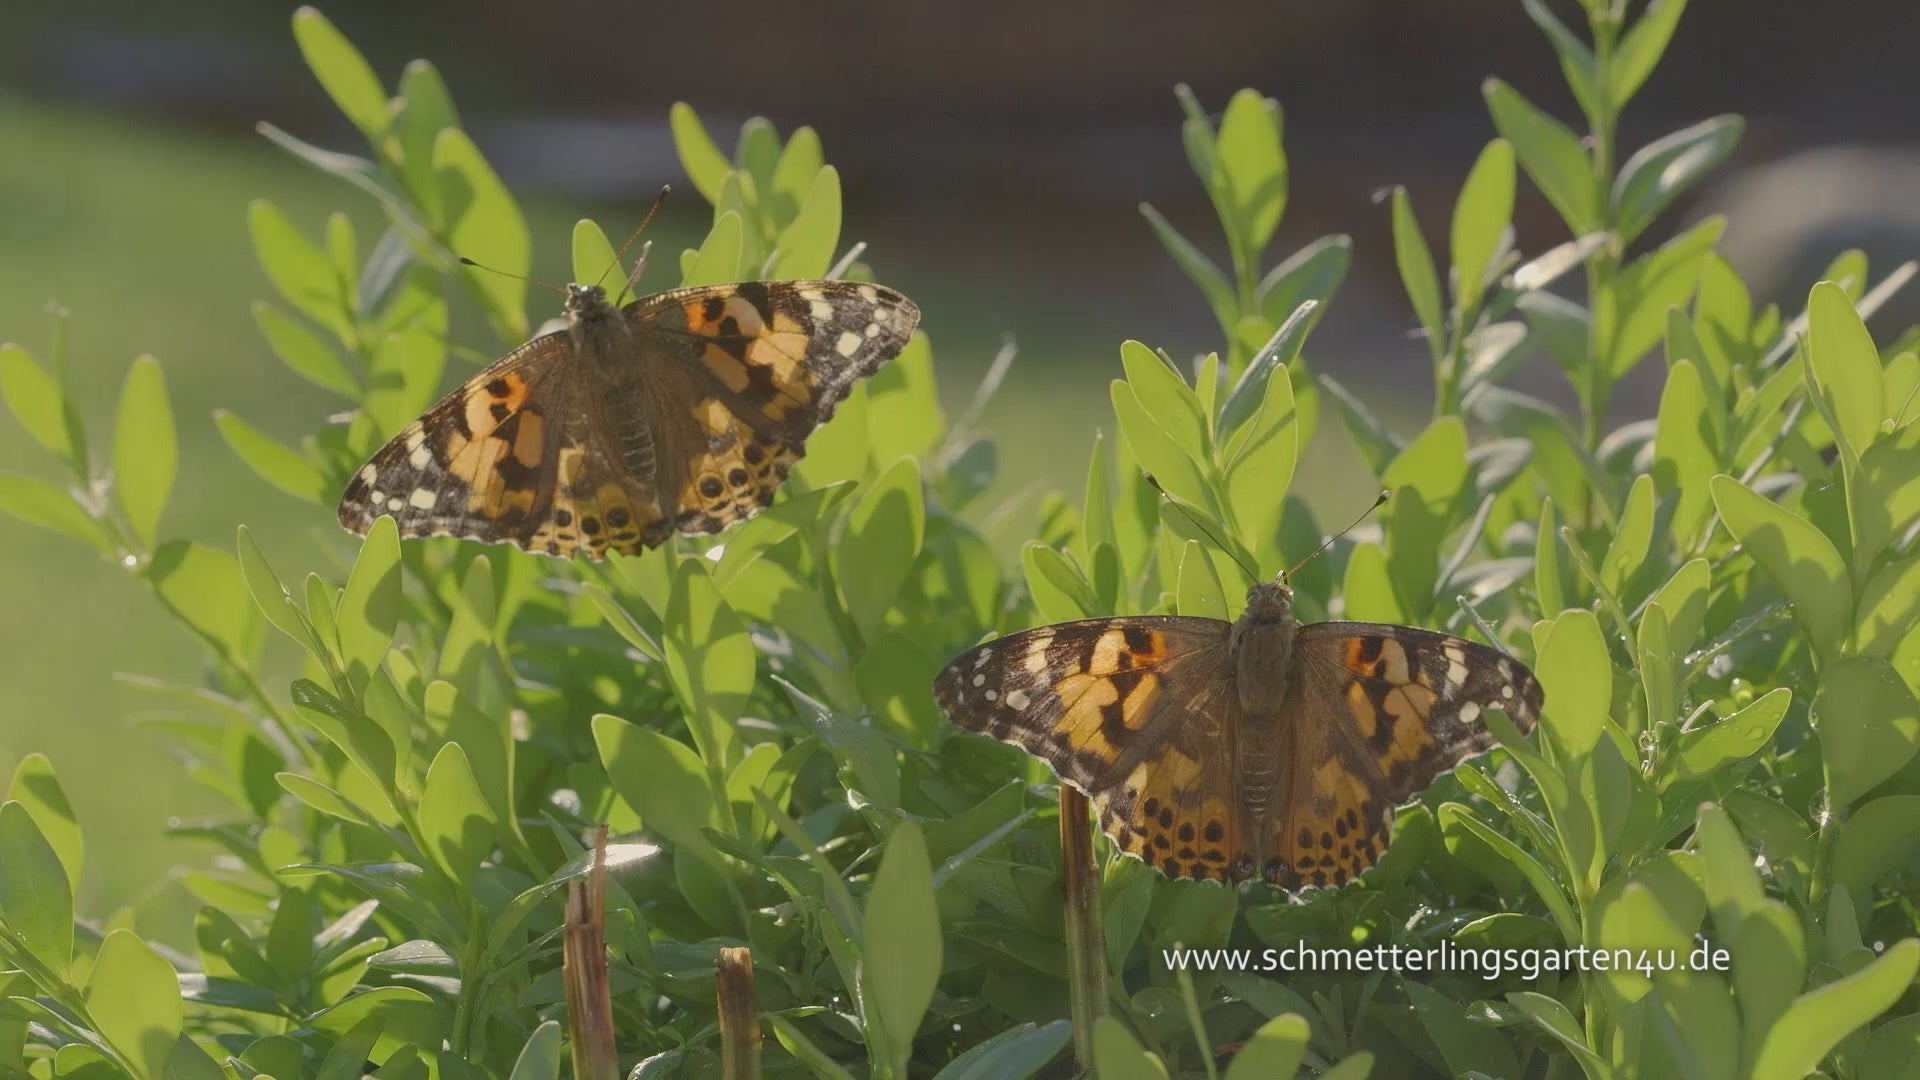 Video laden: Webespot des Schmetterlingsgartens. Eine Mutter züchtet mit ihren zwei Kindern Schmetterlinge und lässt diese dann frei. 